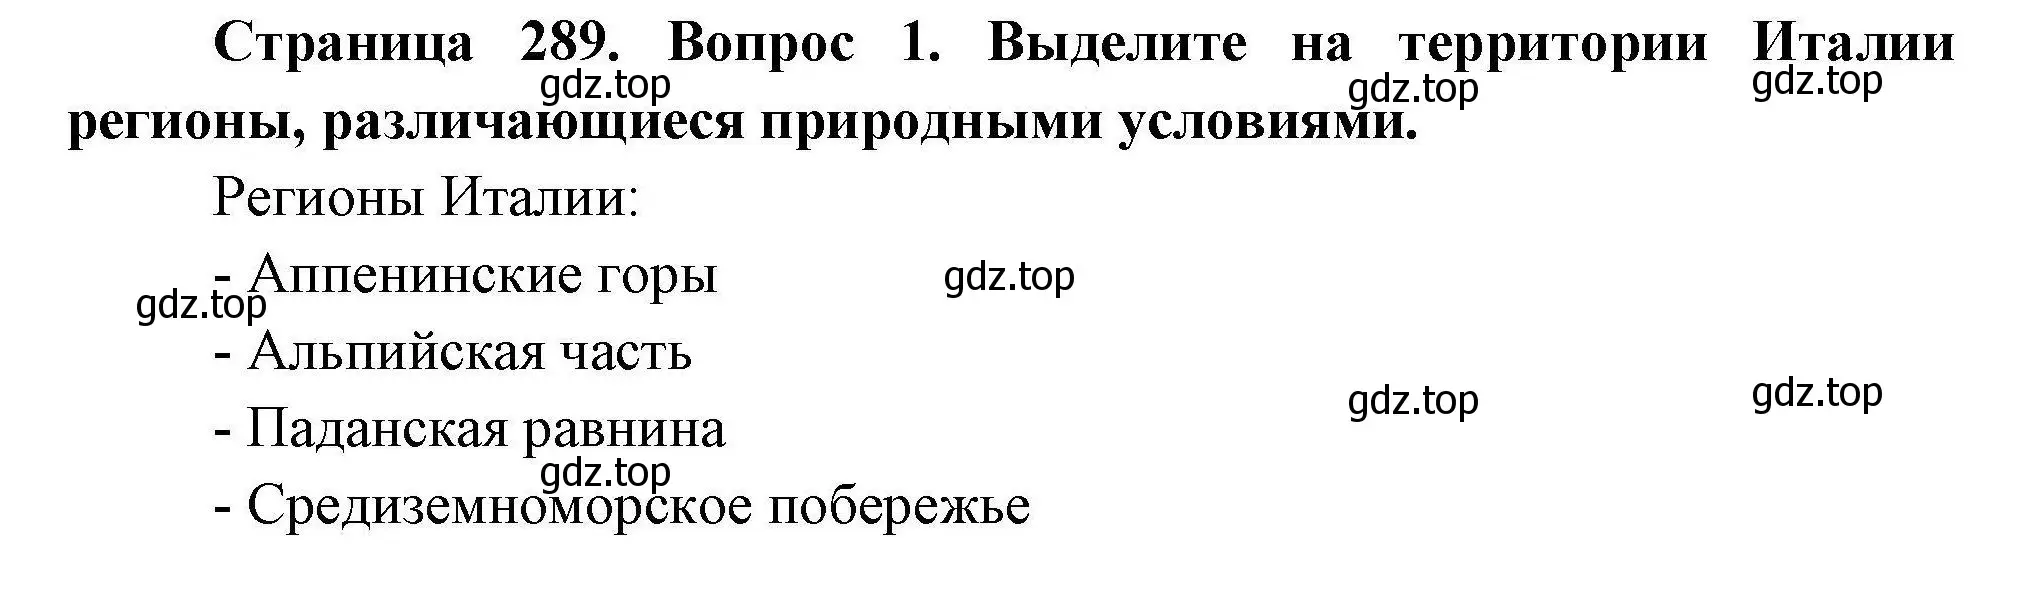 Решение номер 1 (страница 289) гдз по географии 7 класс Коринская, Душина, учебник